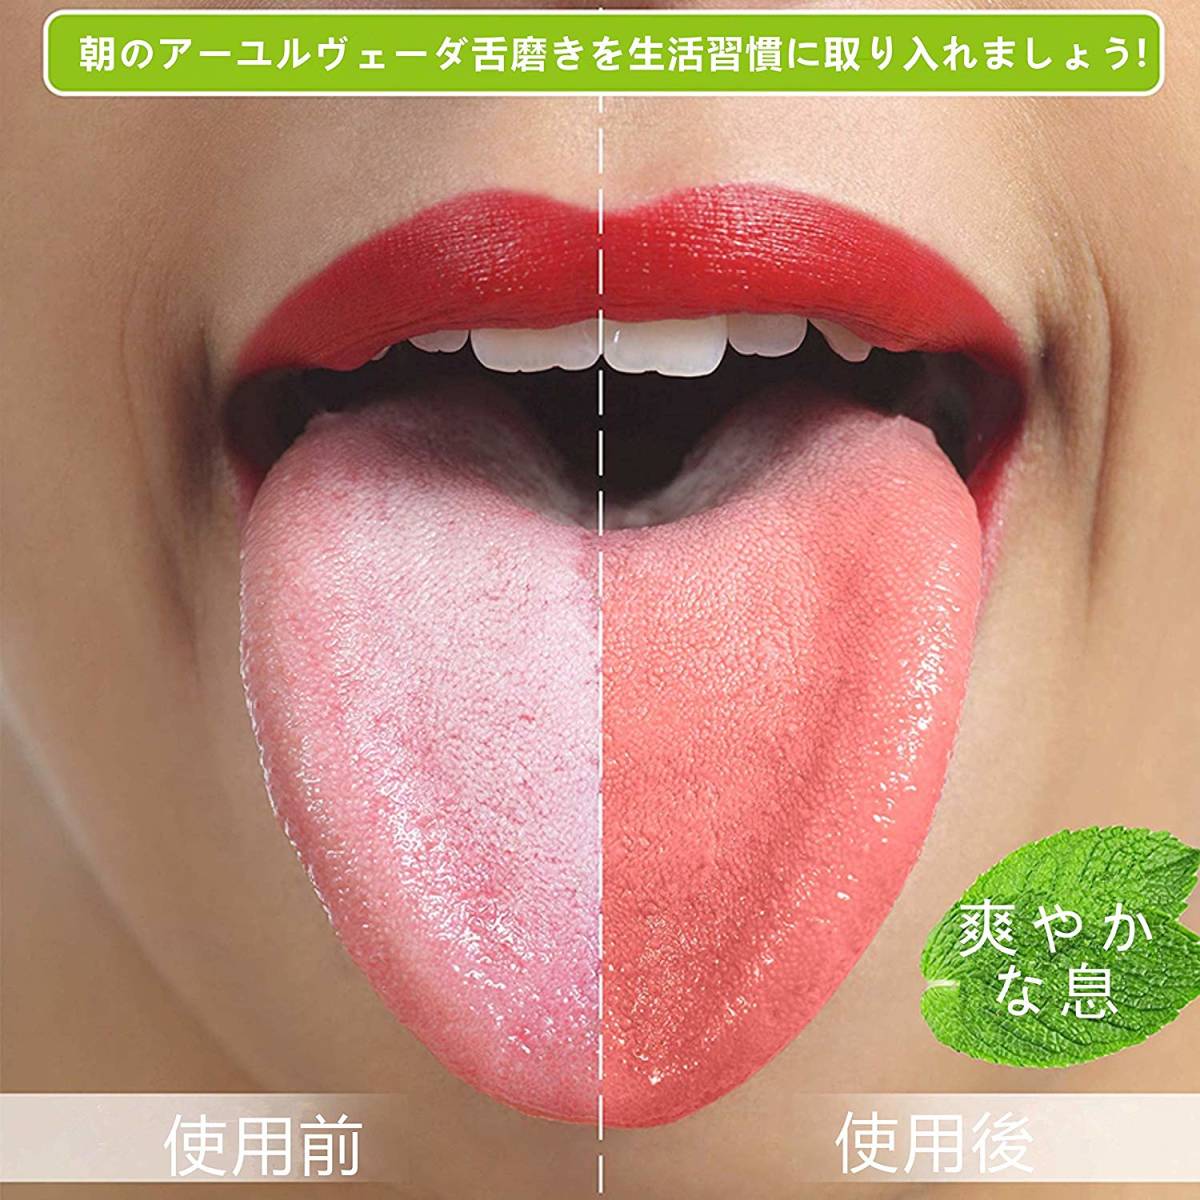 lobon 舌ブラシ 舌みがき 舌クリーナー タングスクレーパー 舌用 抗菌 オーラル ケア タン クリーナー 口臭予防 SD-18_画像6